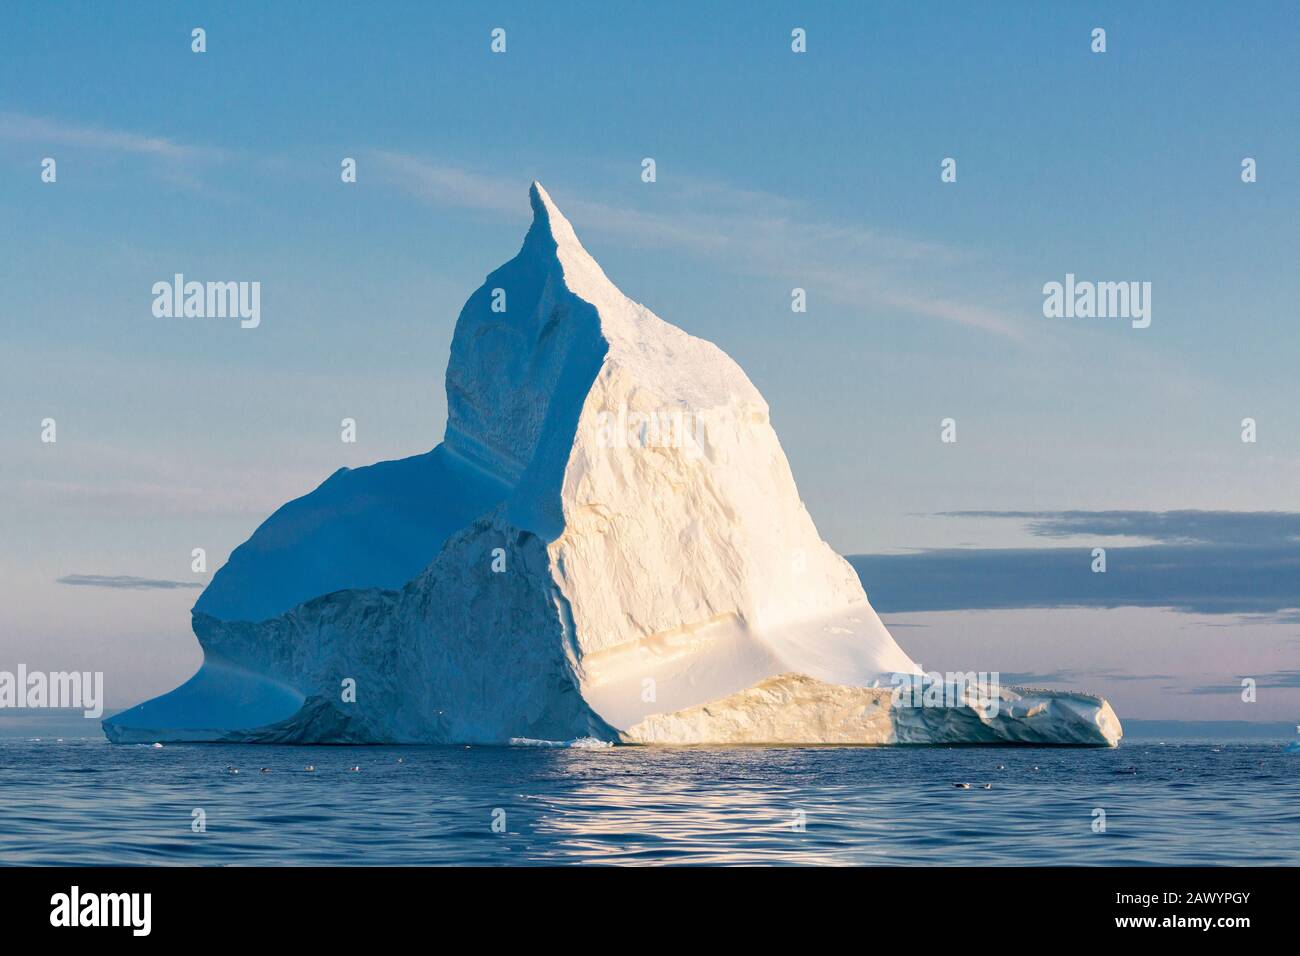 Majestueuse formation d'iceberg sur l'océan Atlantique ensoleillé et tranquille Groenland Banque D'Images